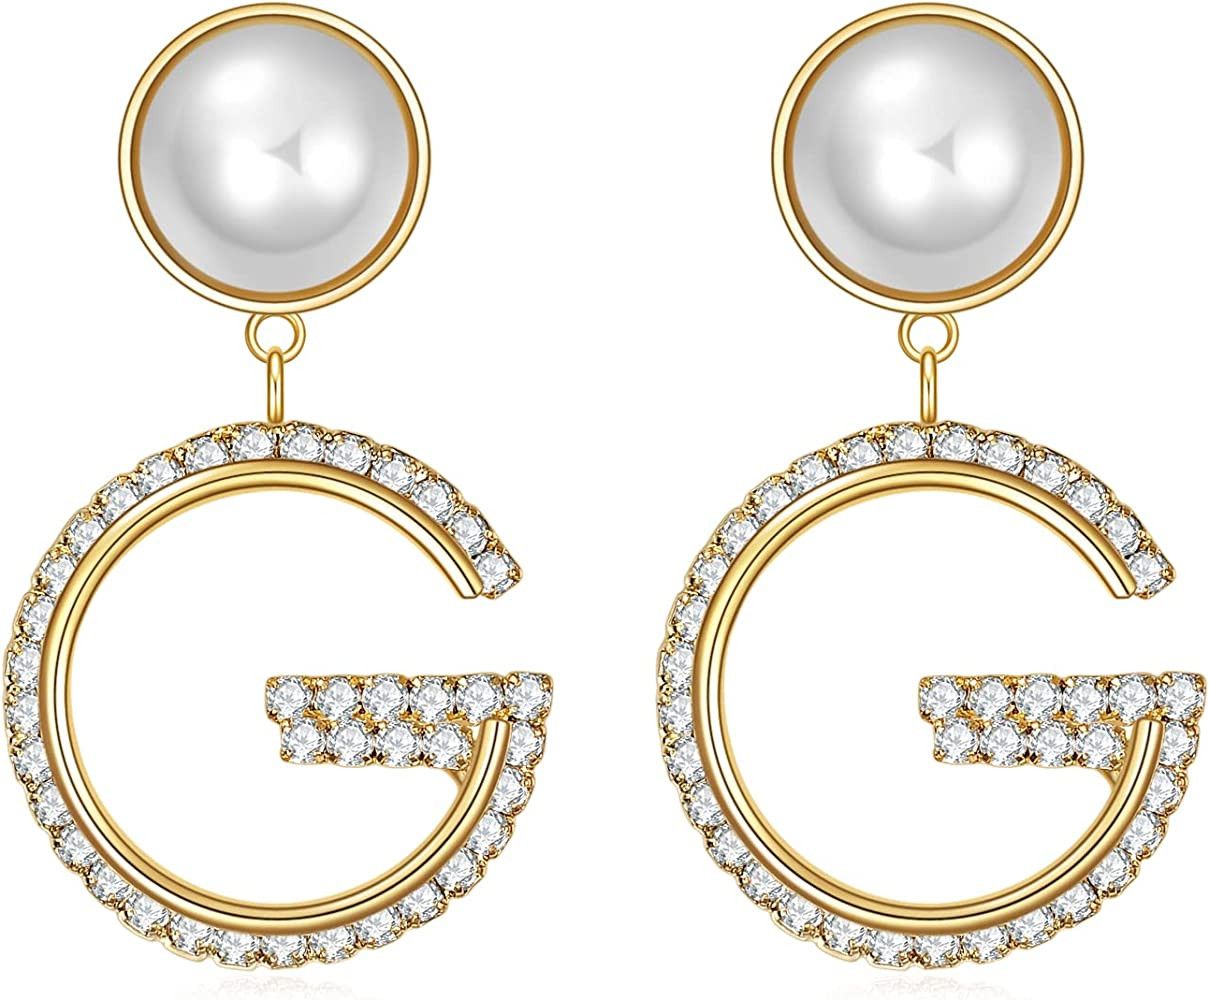 G Initial Letter Earrings - Pearl Drop Earrings Dangle Sterling Silver Earrings, Prime Day Deal | Amazon (US)